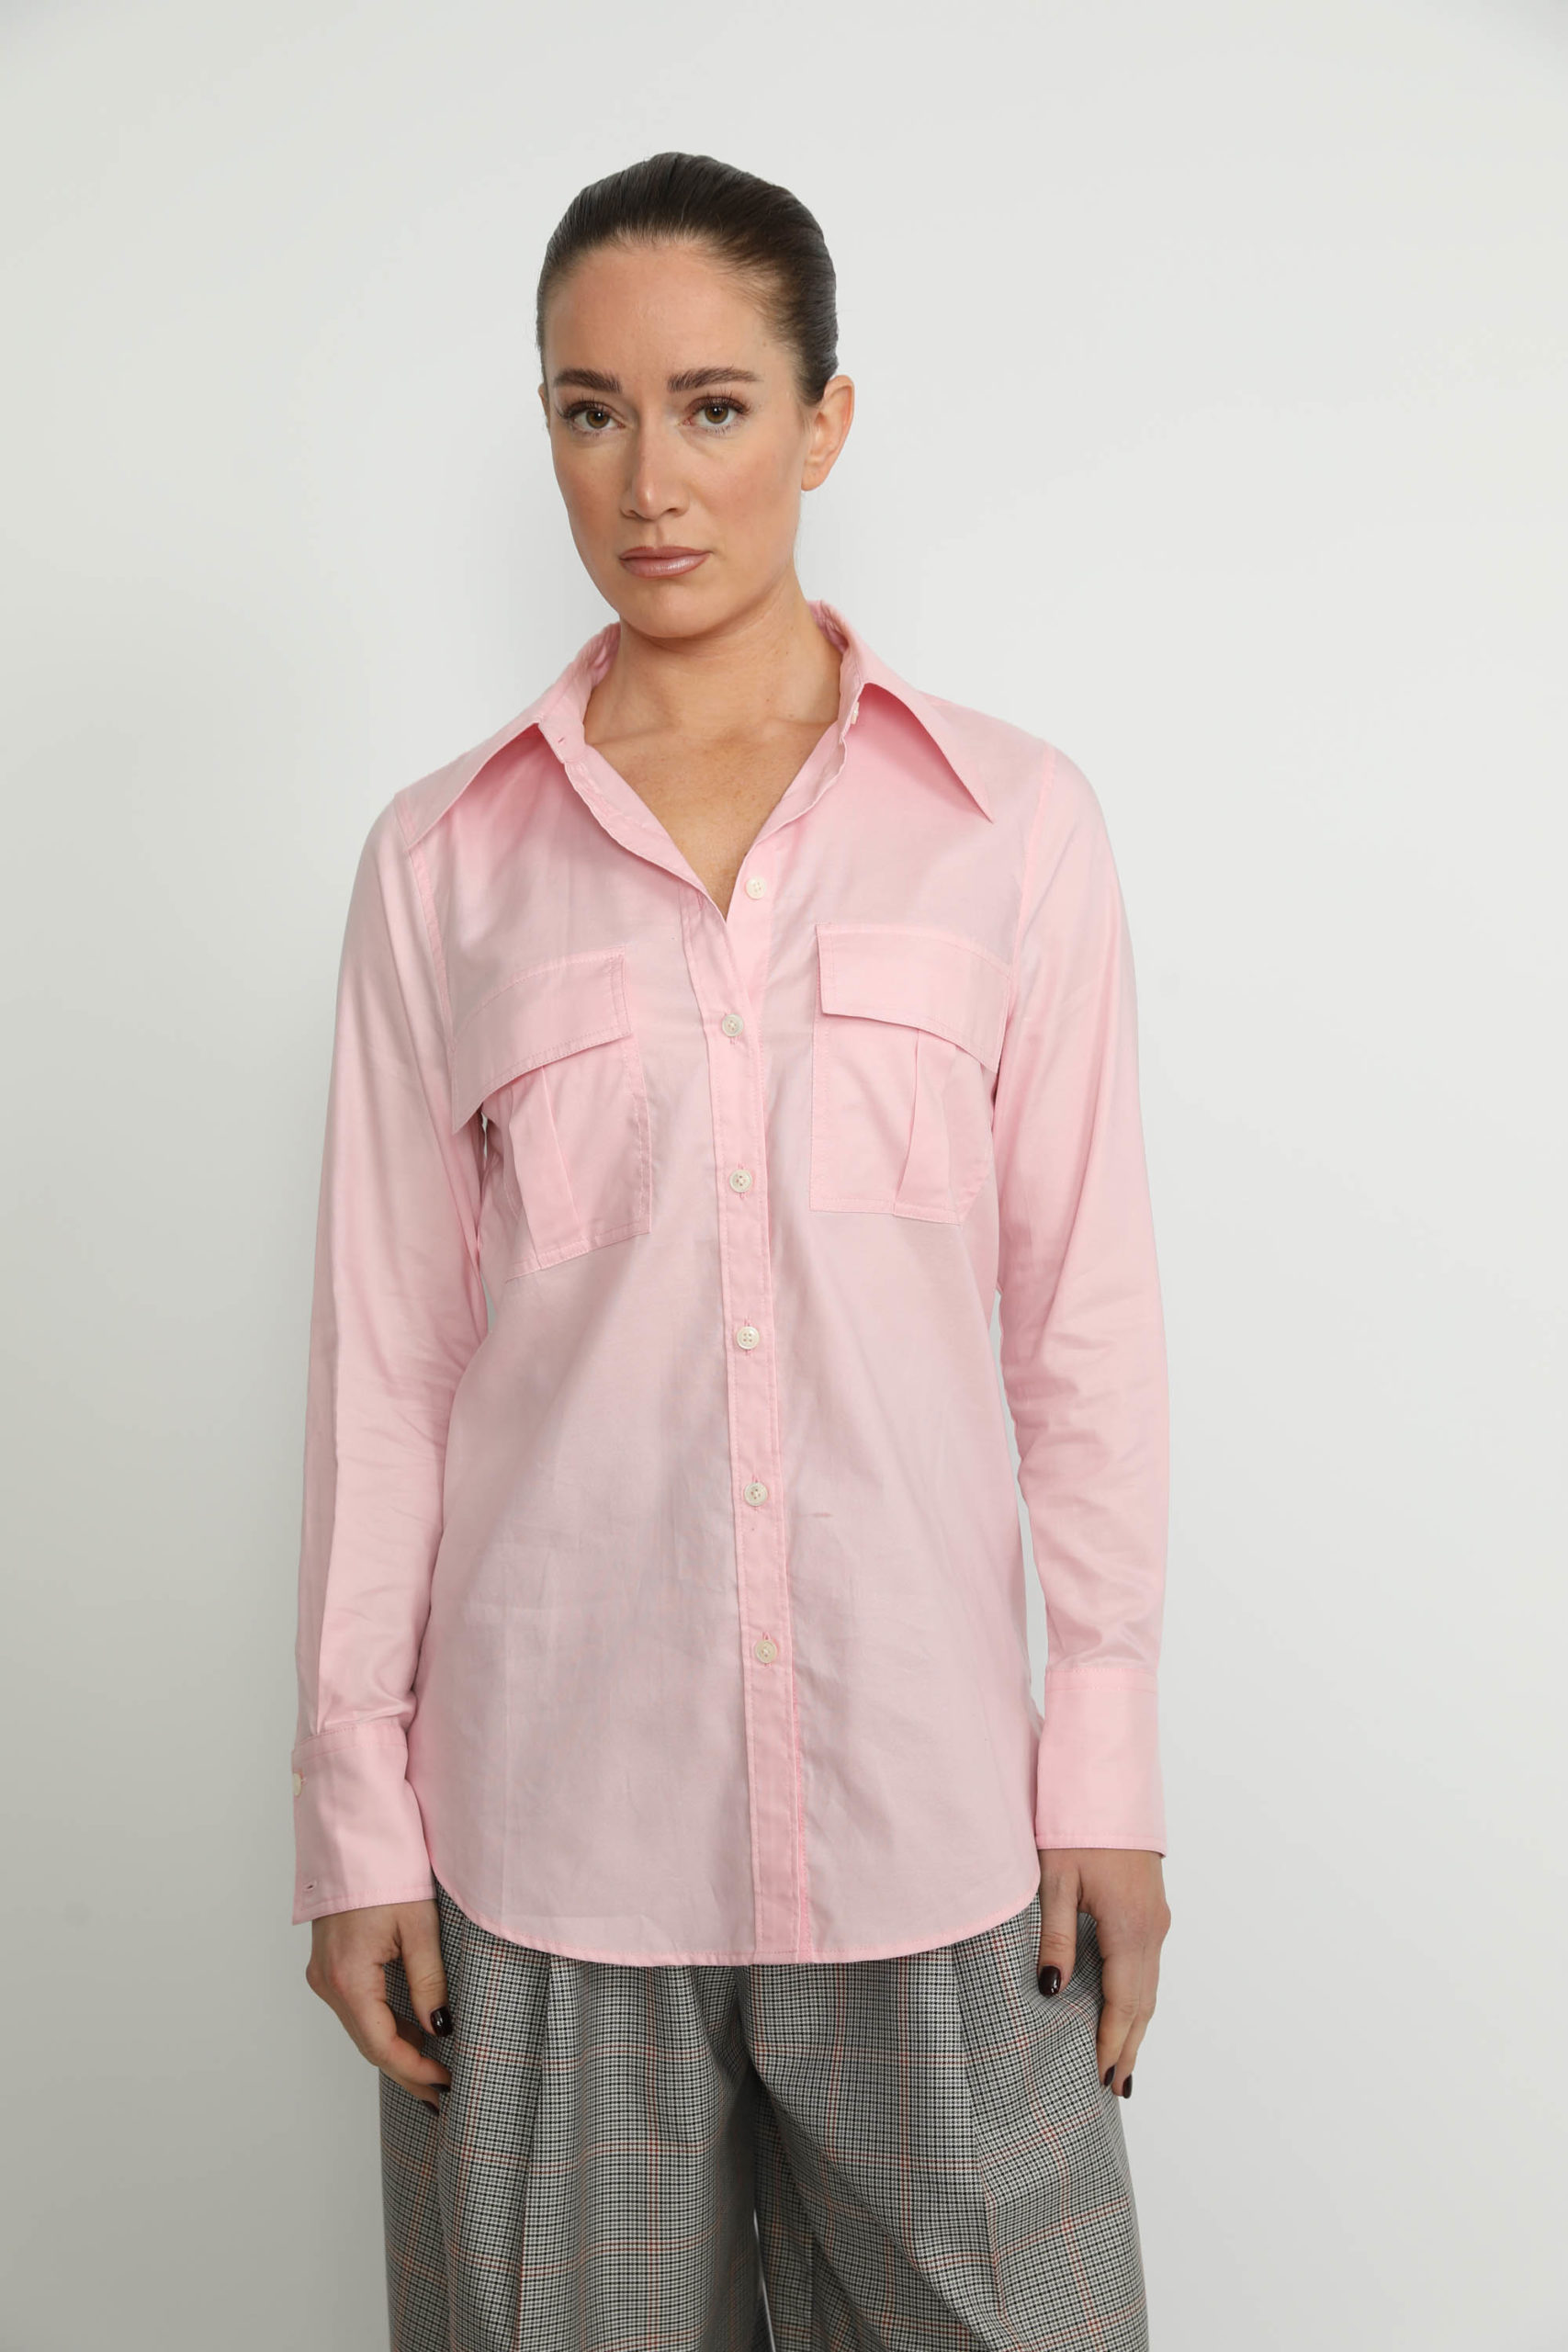 Metz Shirt – Metz Pink Shirt0